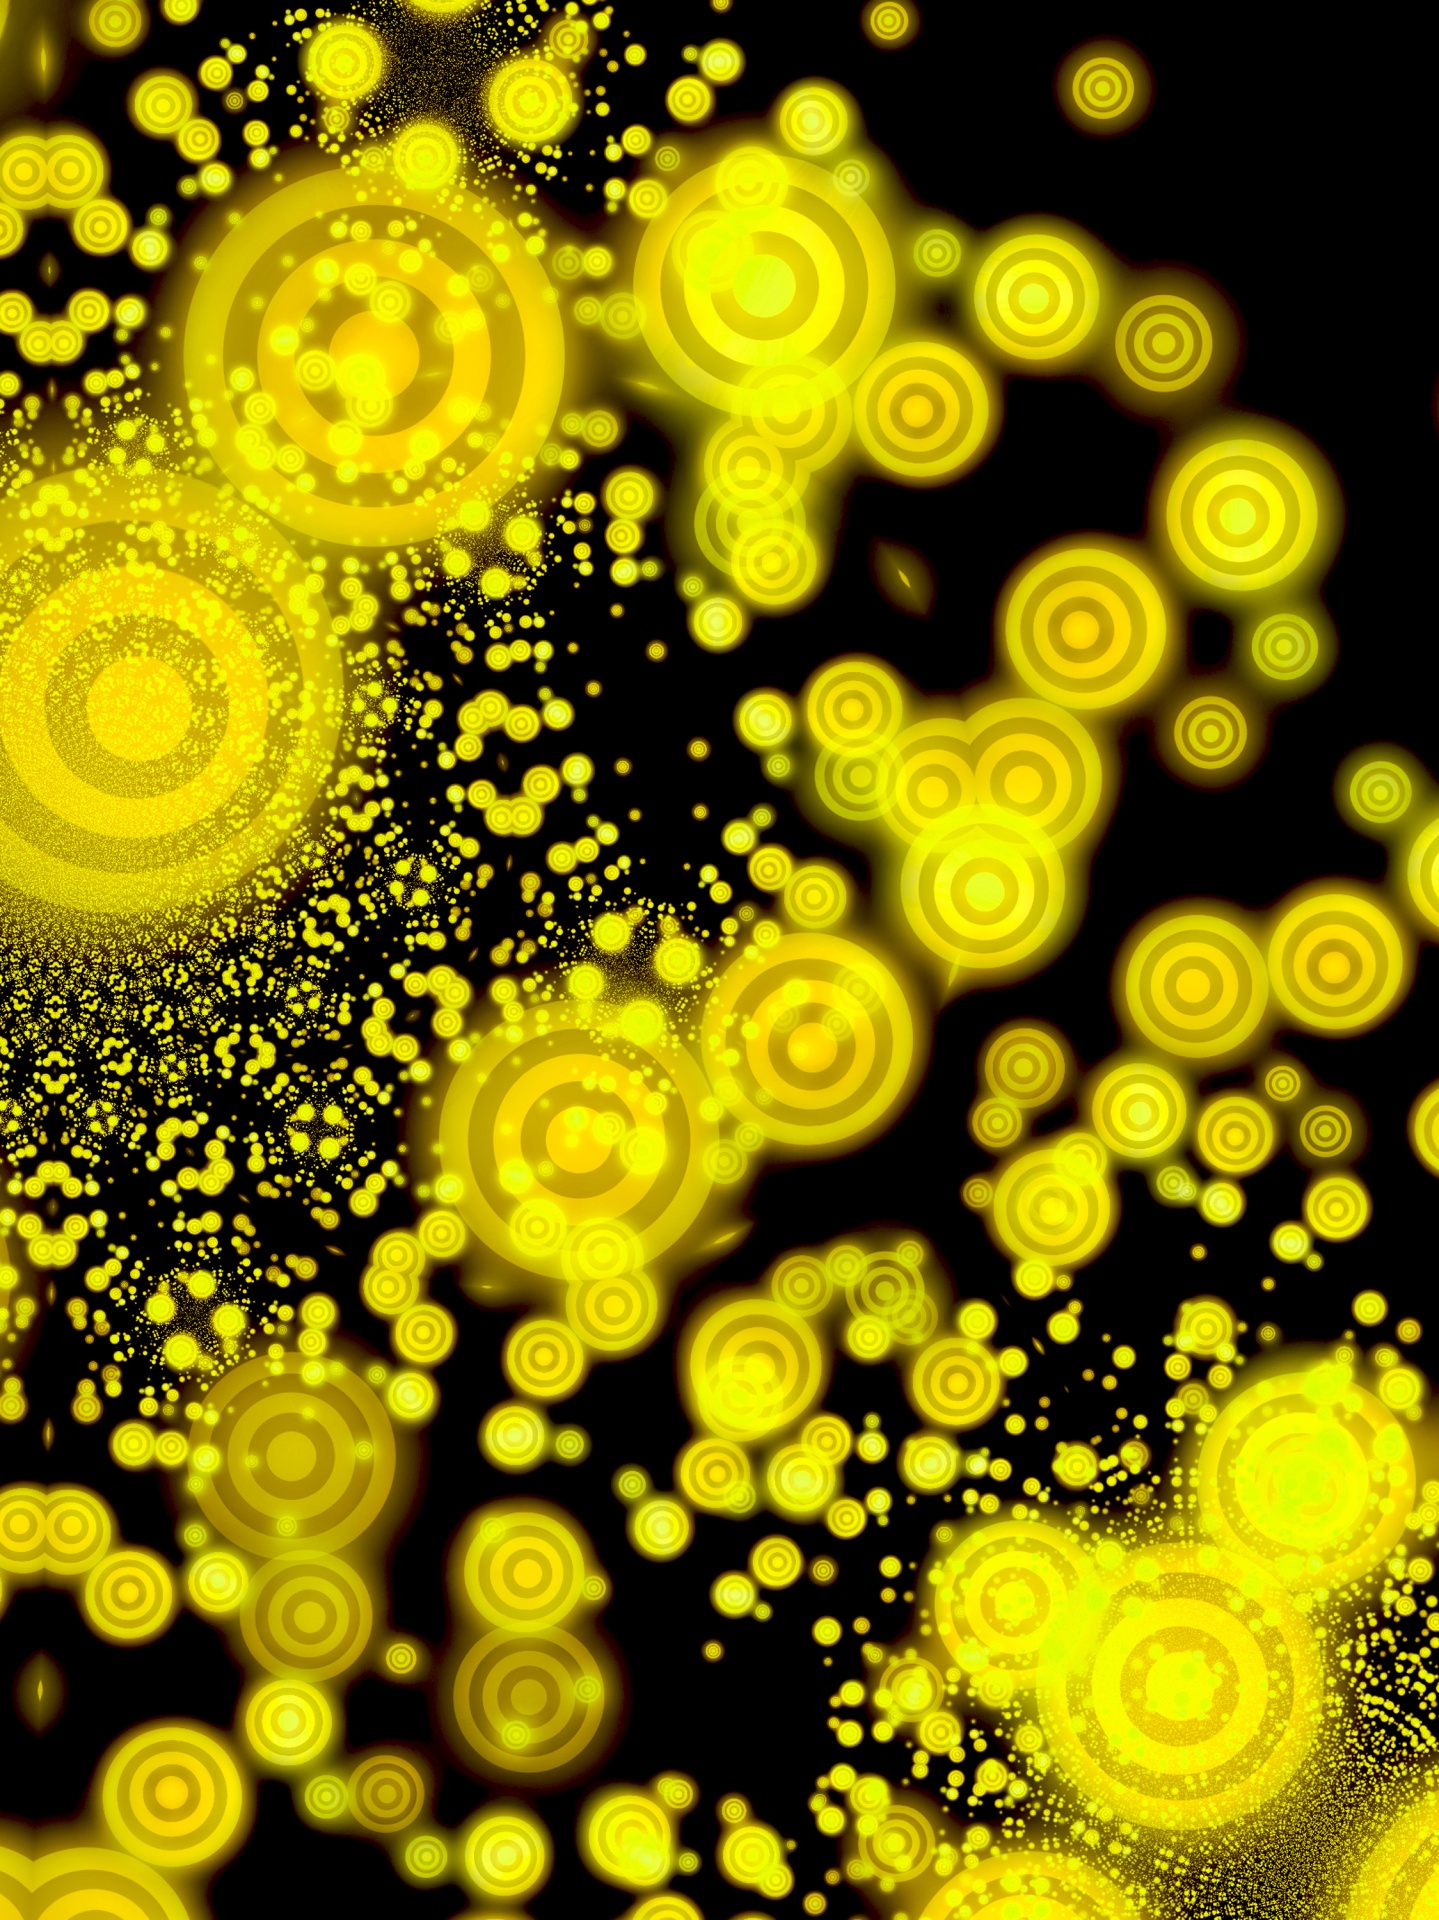 vortex glow pattern free photo